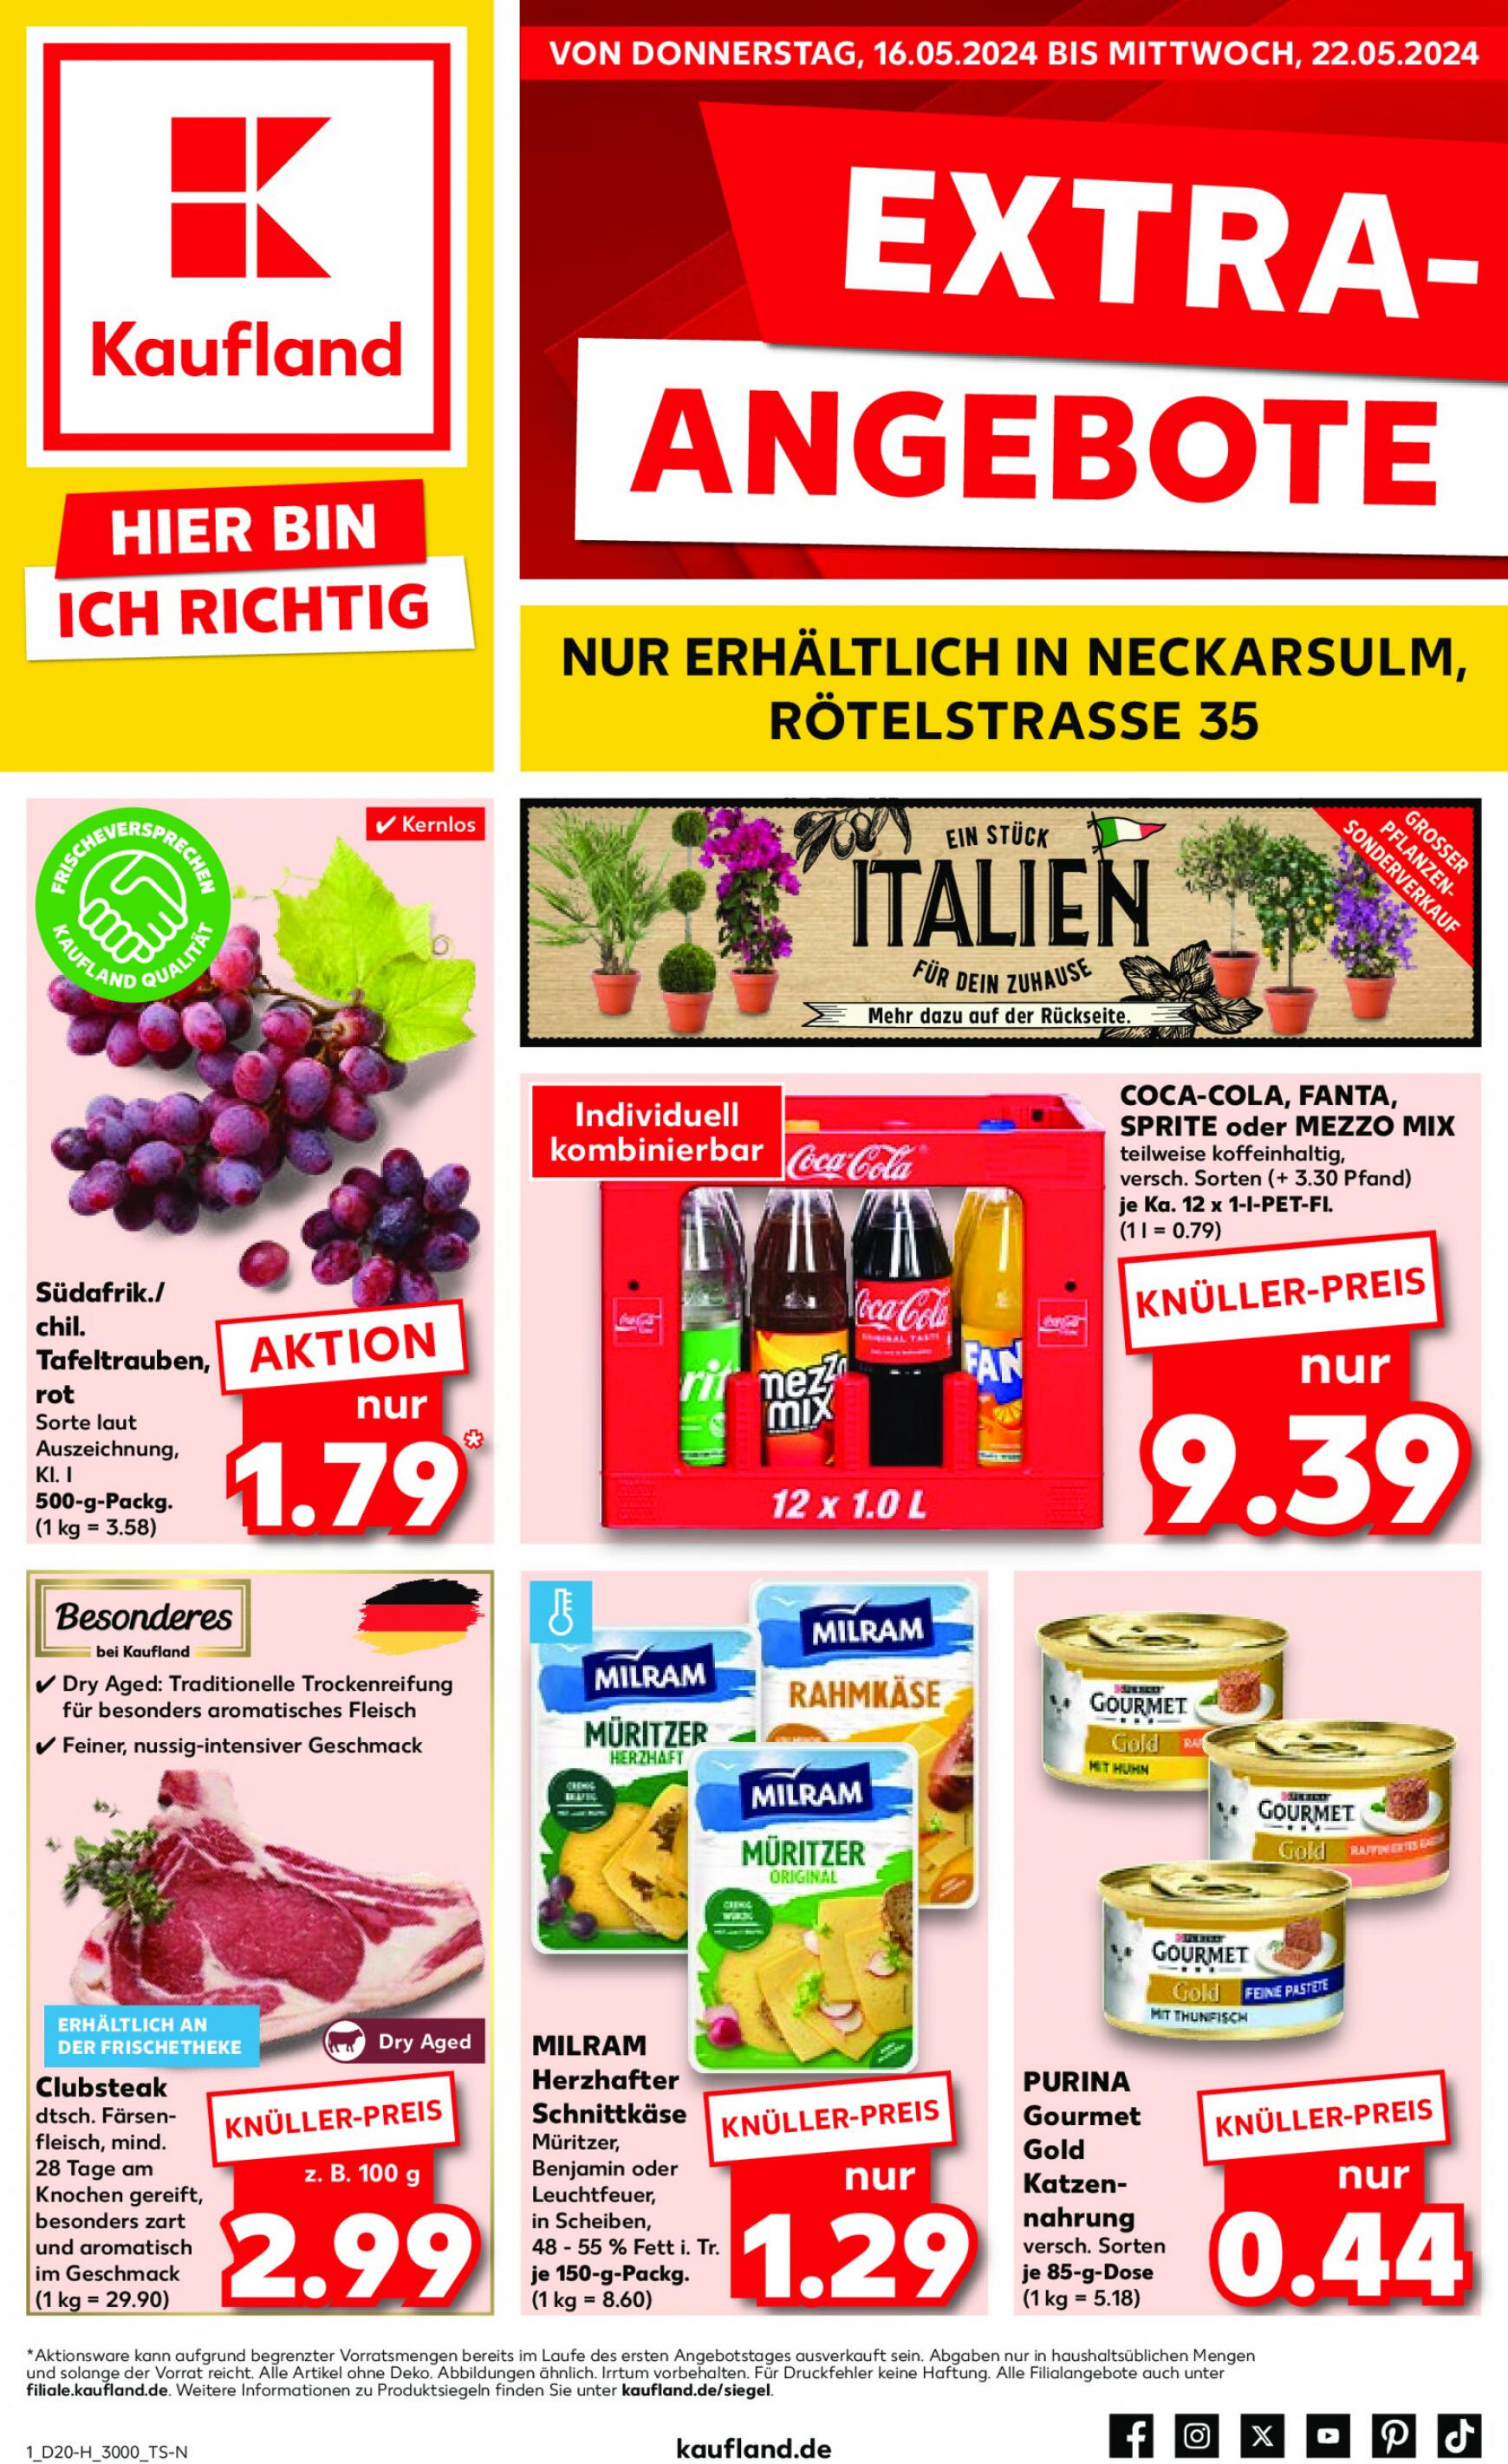 kaufland - Flyer Kaufland aktuell 16.05. - 22.05. - page: 1